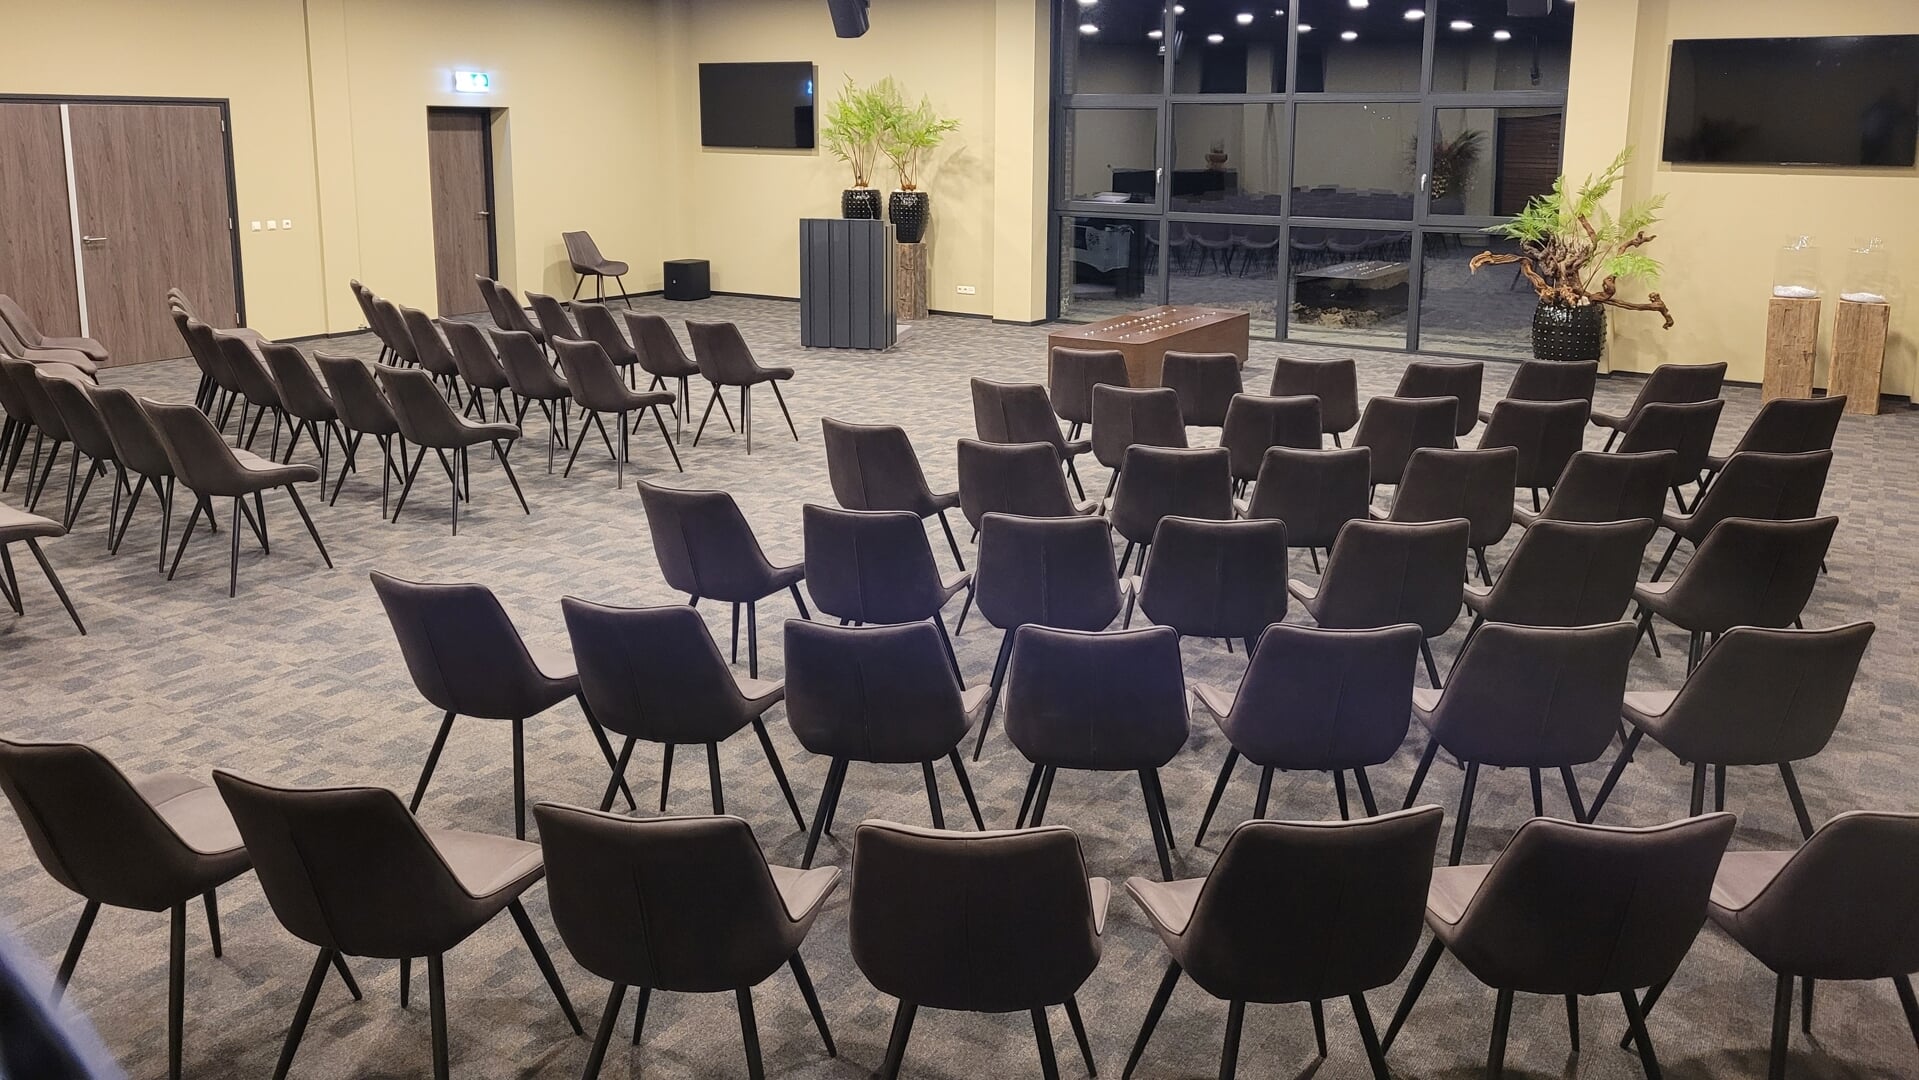 De nieuwe aula van Uitvaartcentrum Maarsstee in Stadskanaal biedt plaats aan 99 personen. (eigen foto) 